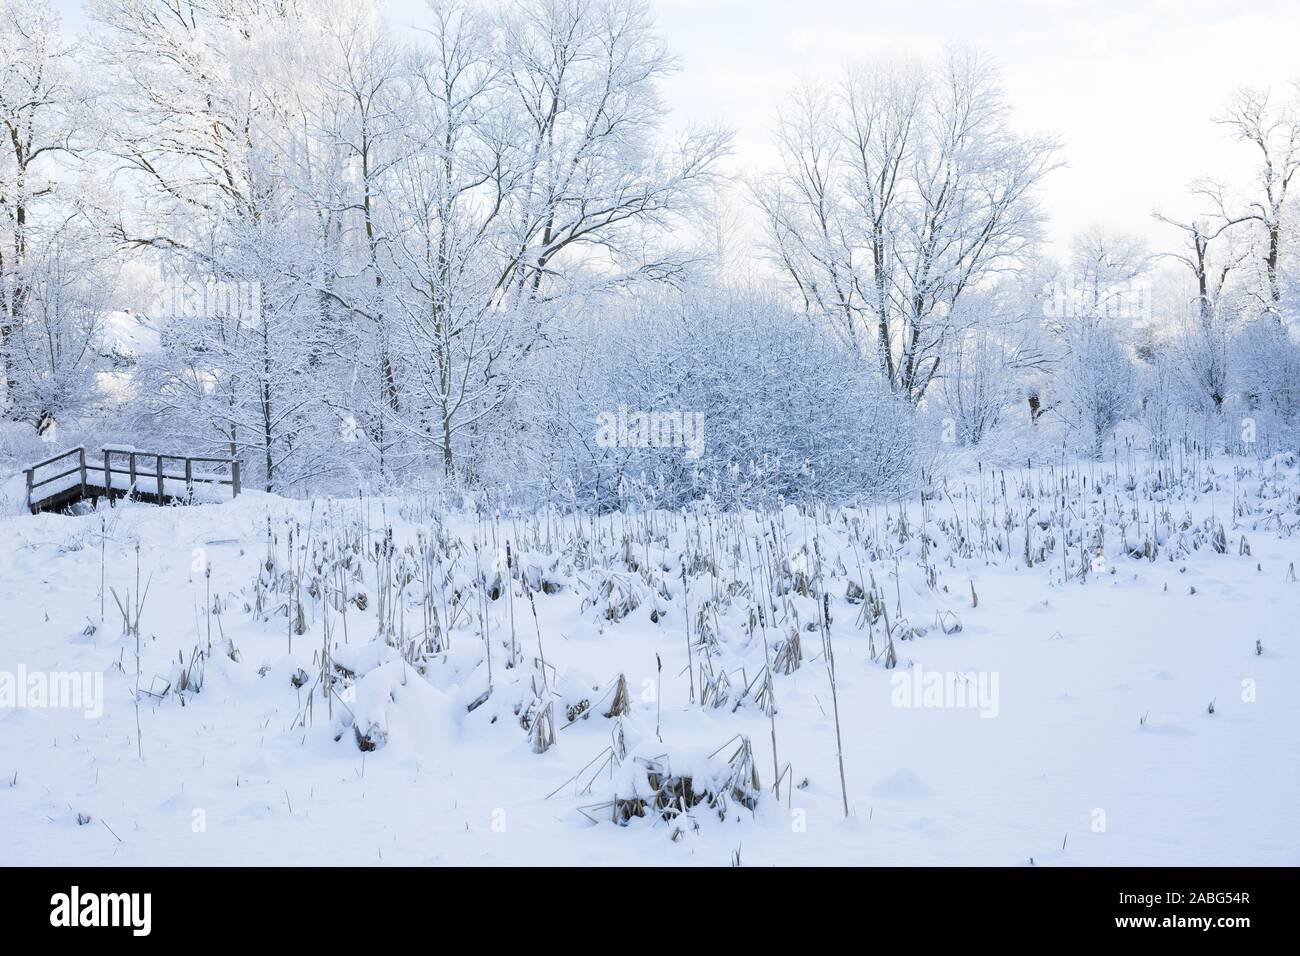 Zugefrorener Teich mit Rohrkolben, inverno, Schnee, Eis Winterlandschaft, Winterstimmung, winterlich, eisig, kalt, neve Foto Stock